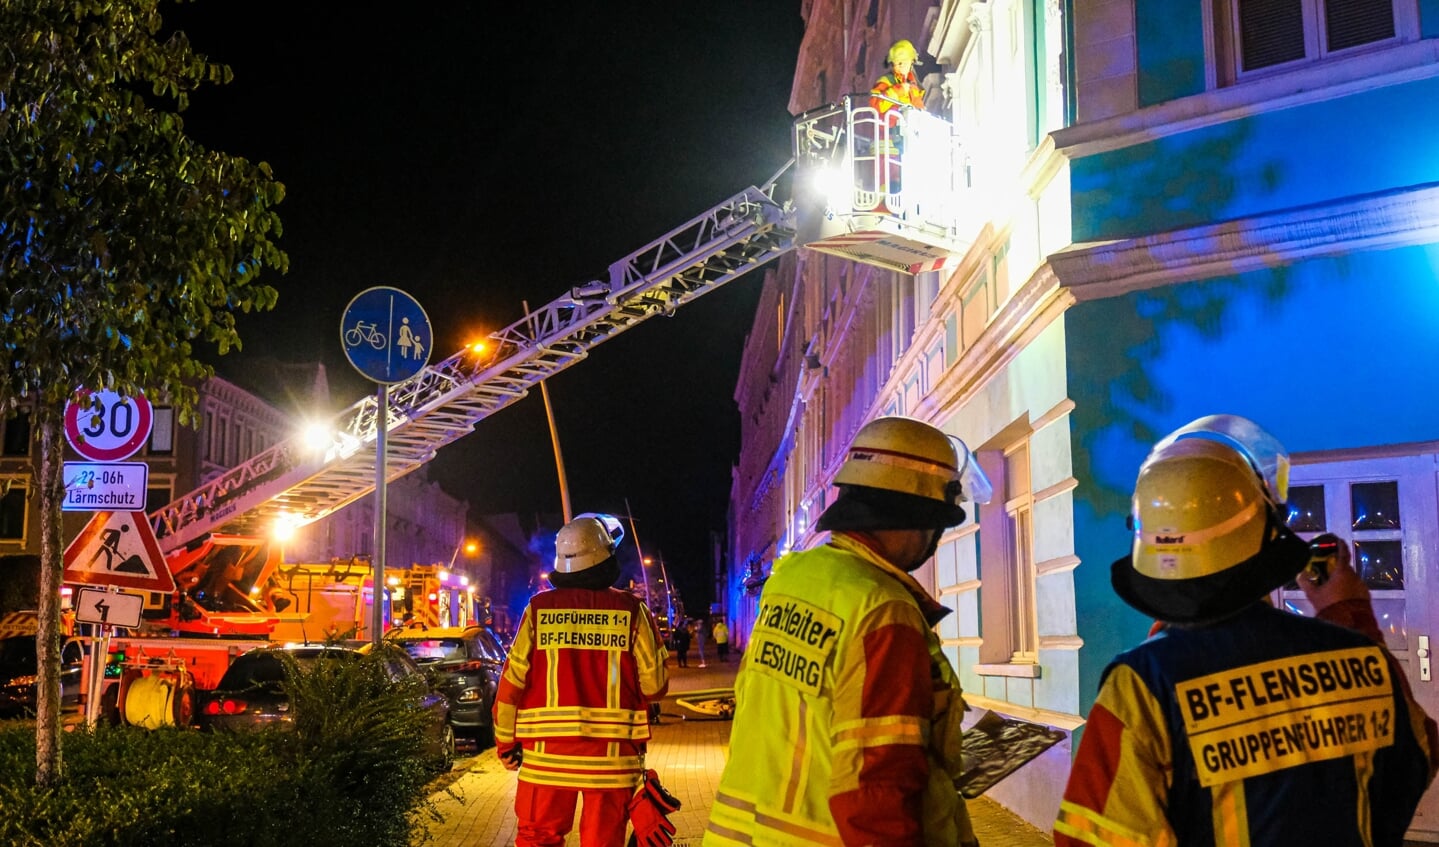 Feuerwehr-Einsatz in der Apenrader Straße: Beim Brand eines Kinderwagens im Treppenhaus wurden in der Nacht zu Dienstag 16 Hausbewohner verletzt. Foto: